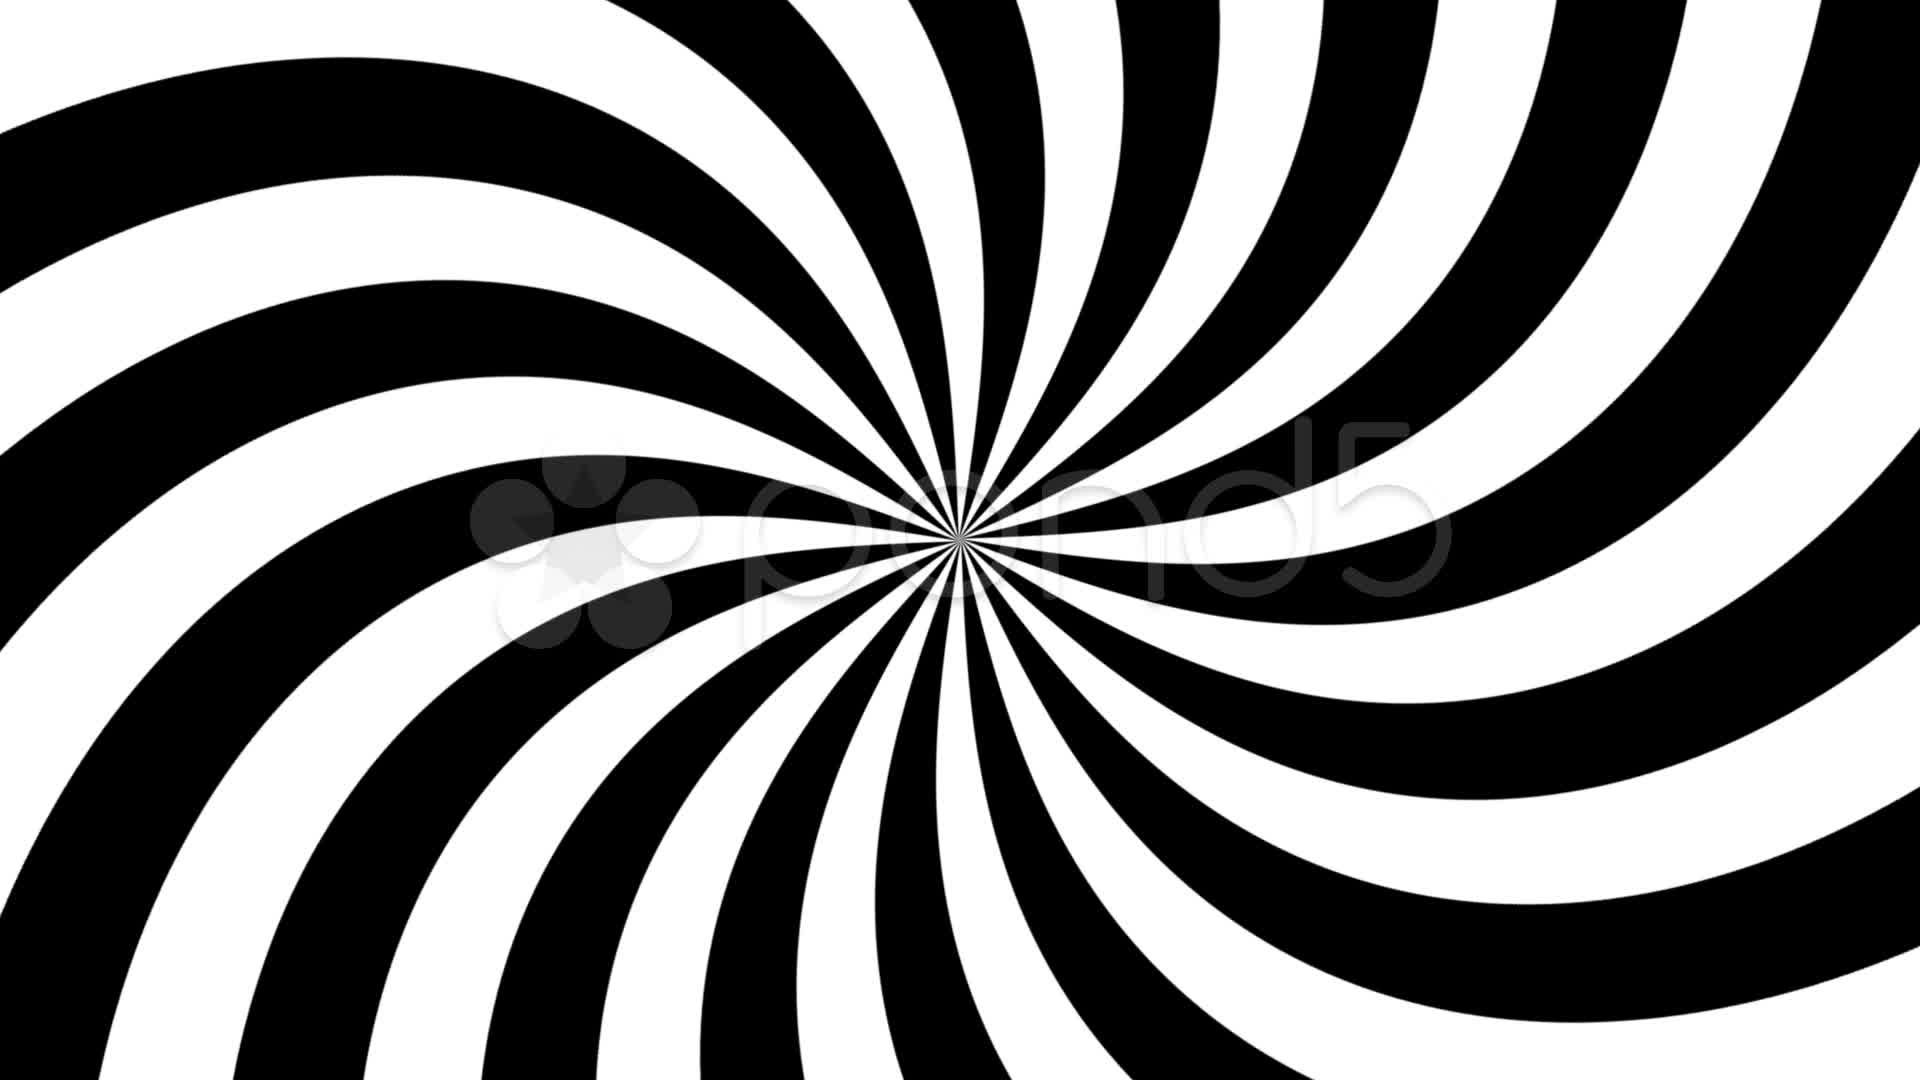 Twirl hypnotize ~ Stock Video Footage #18006945 | Pond5